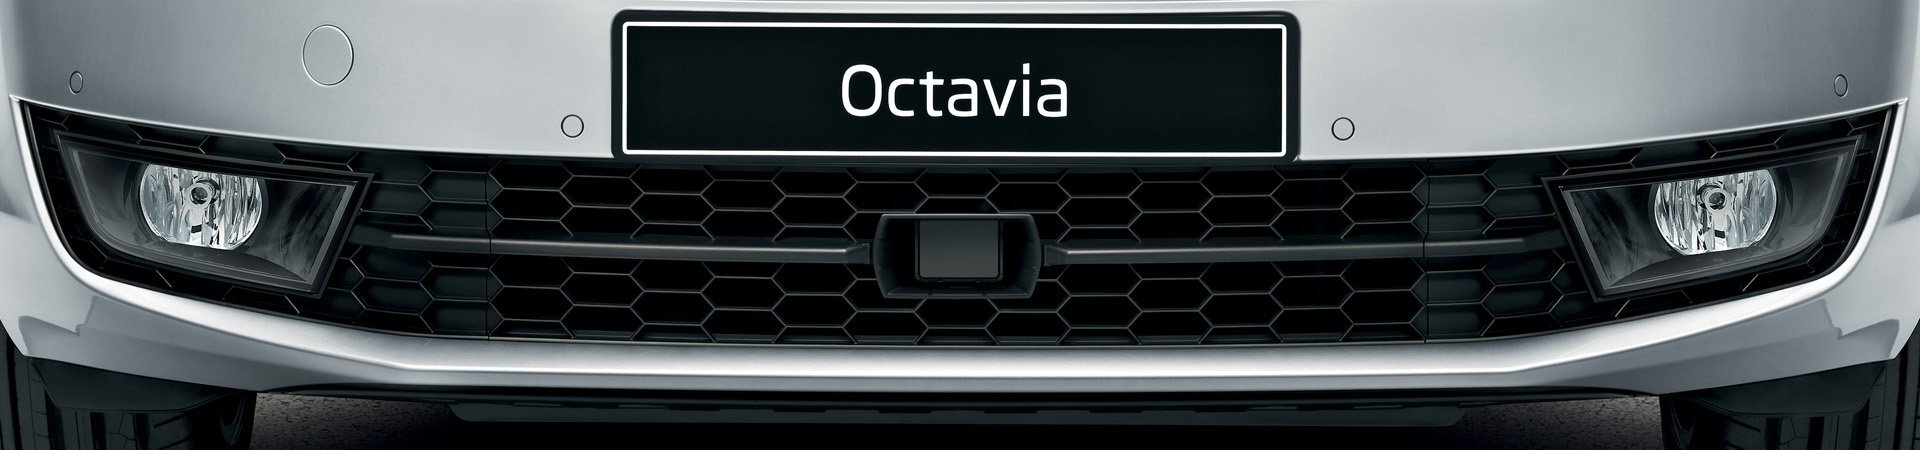 Skoda Octavia assist radar